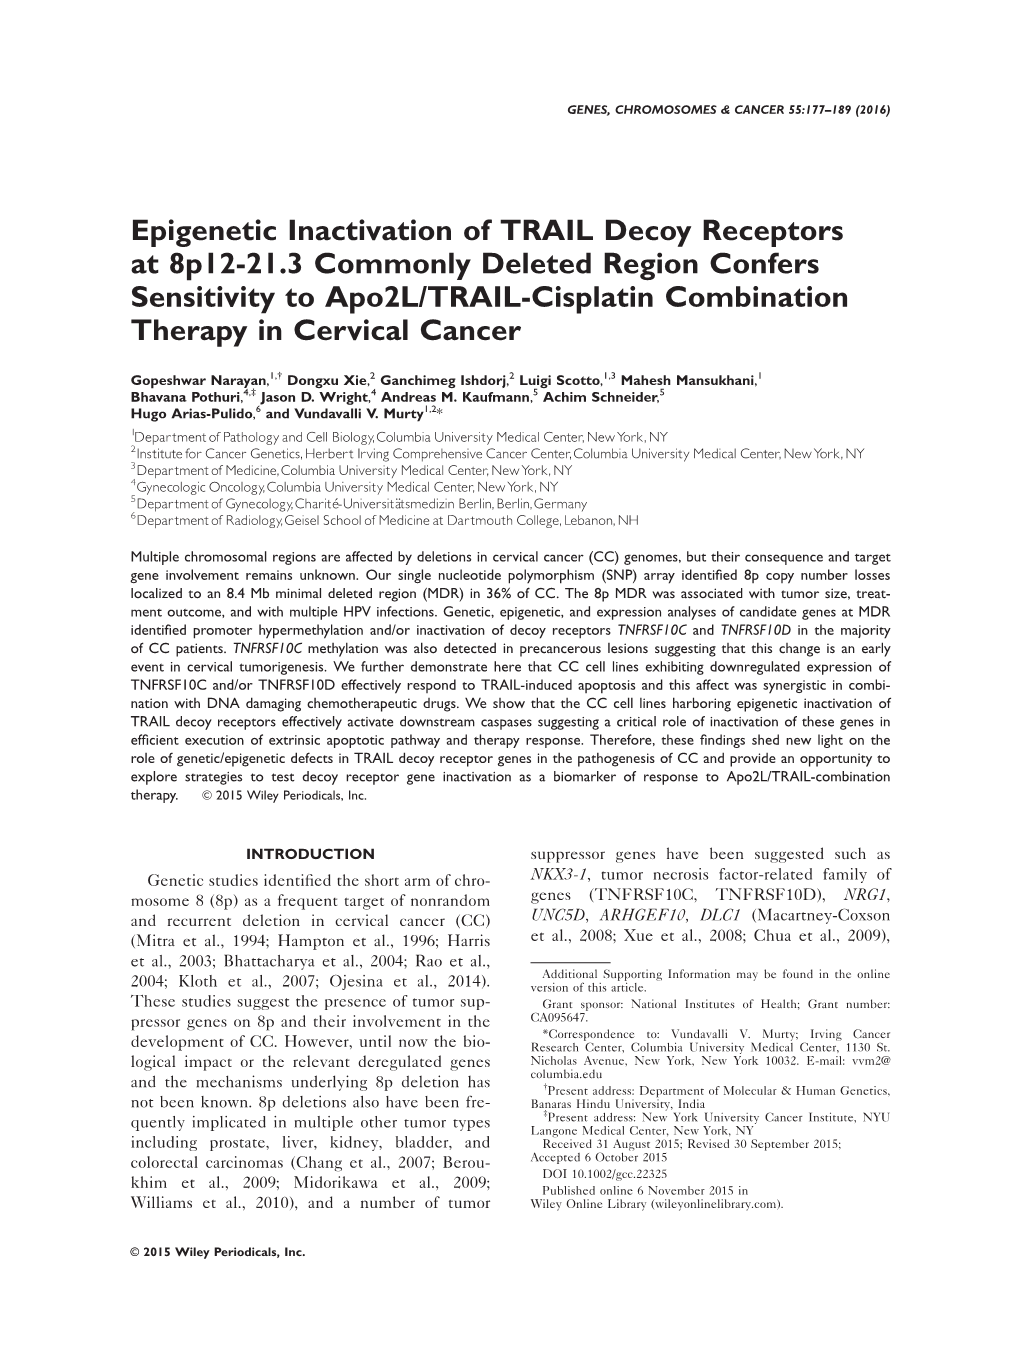 Epigenetic Inactivation of TRAIL Decoy Receptors at 8P12&